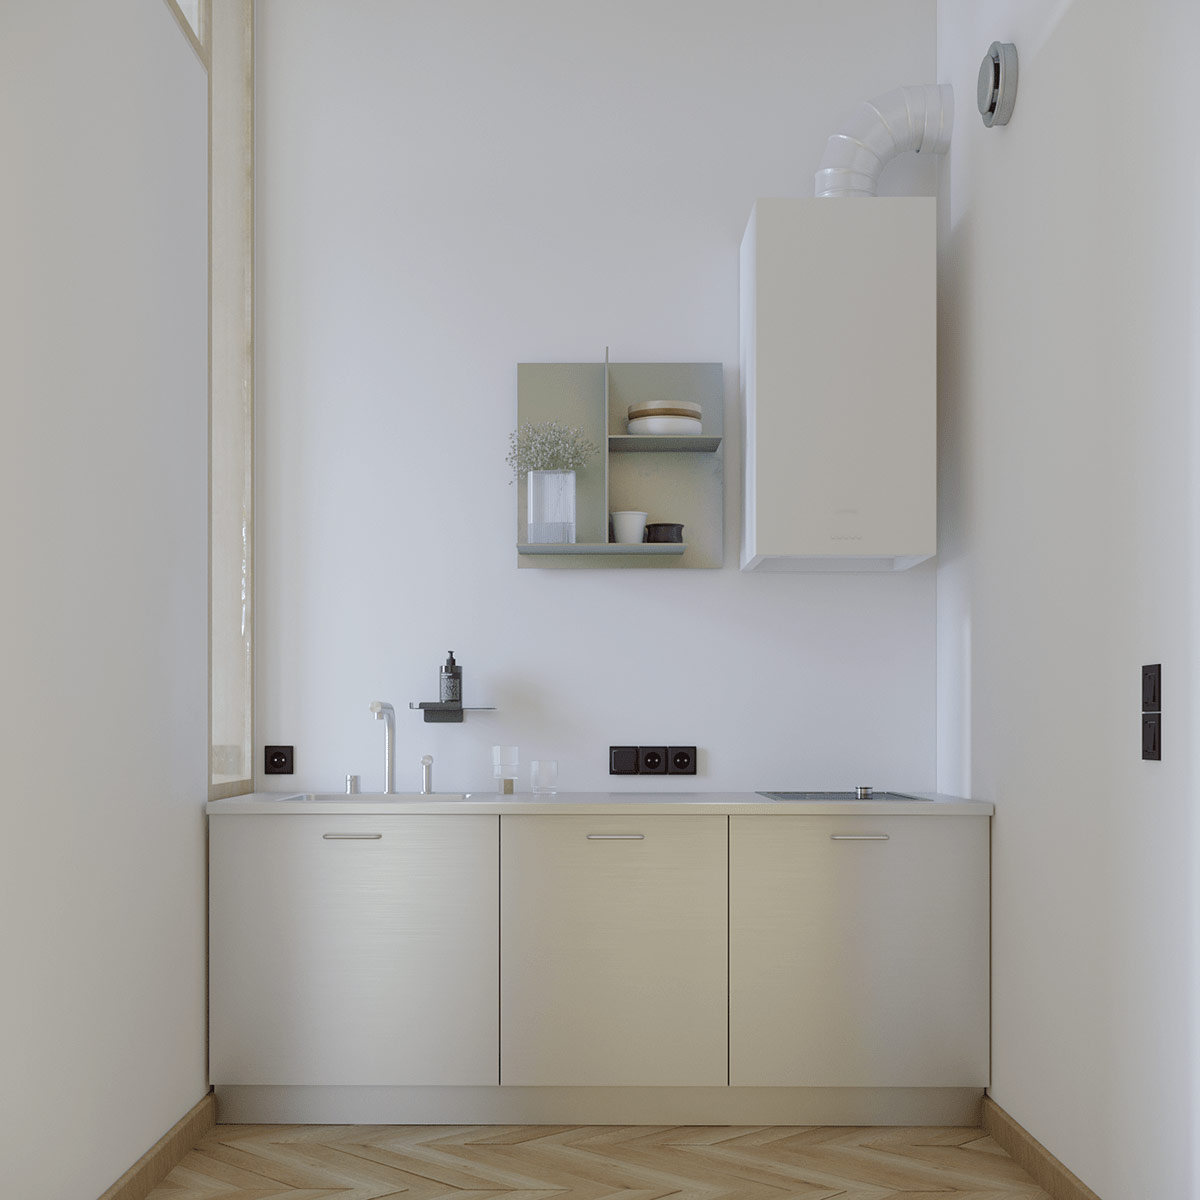 Phòng bếp được thiết kế riêng biệt trong một góc nhỏ với kiểu chữ I đơn giản nhưng đáp ứng đầy đủ tiện nghi.